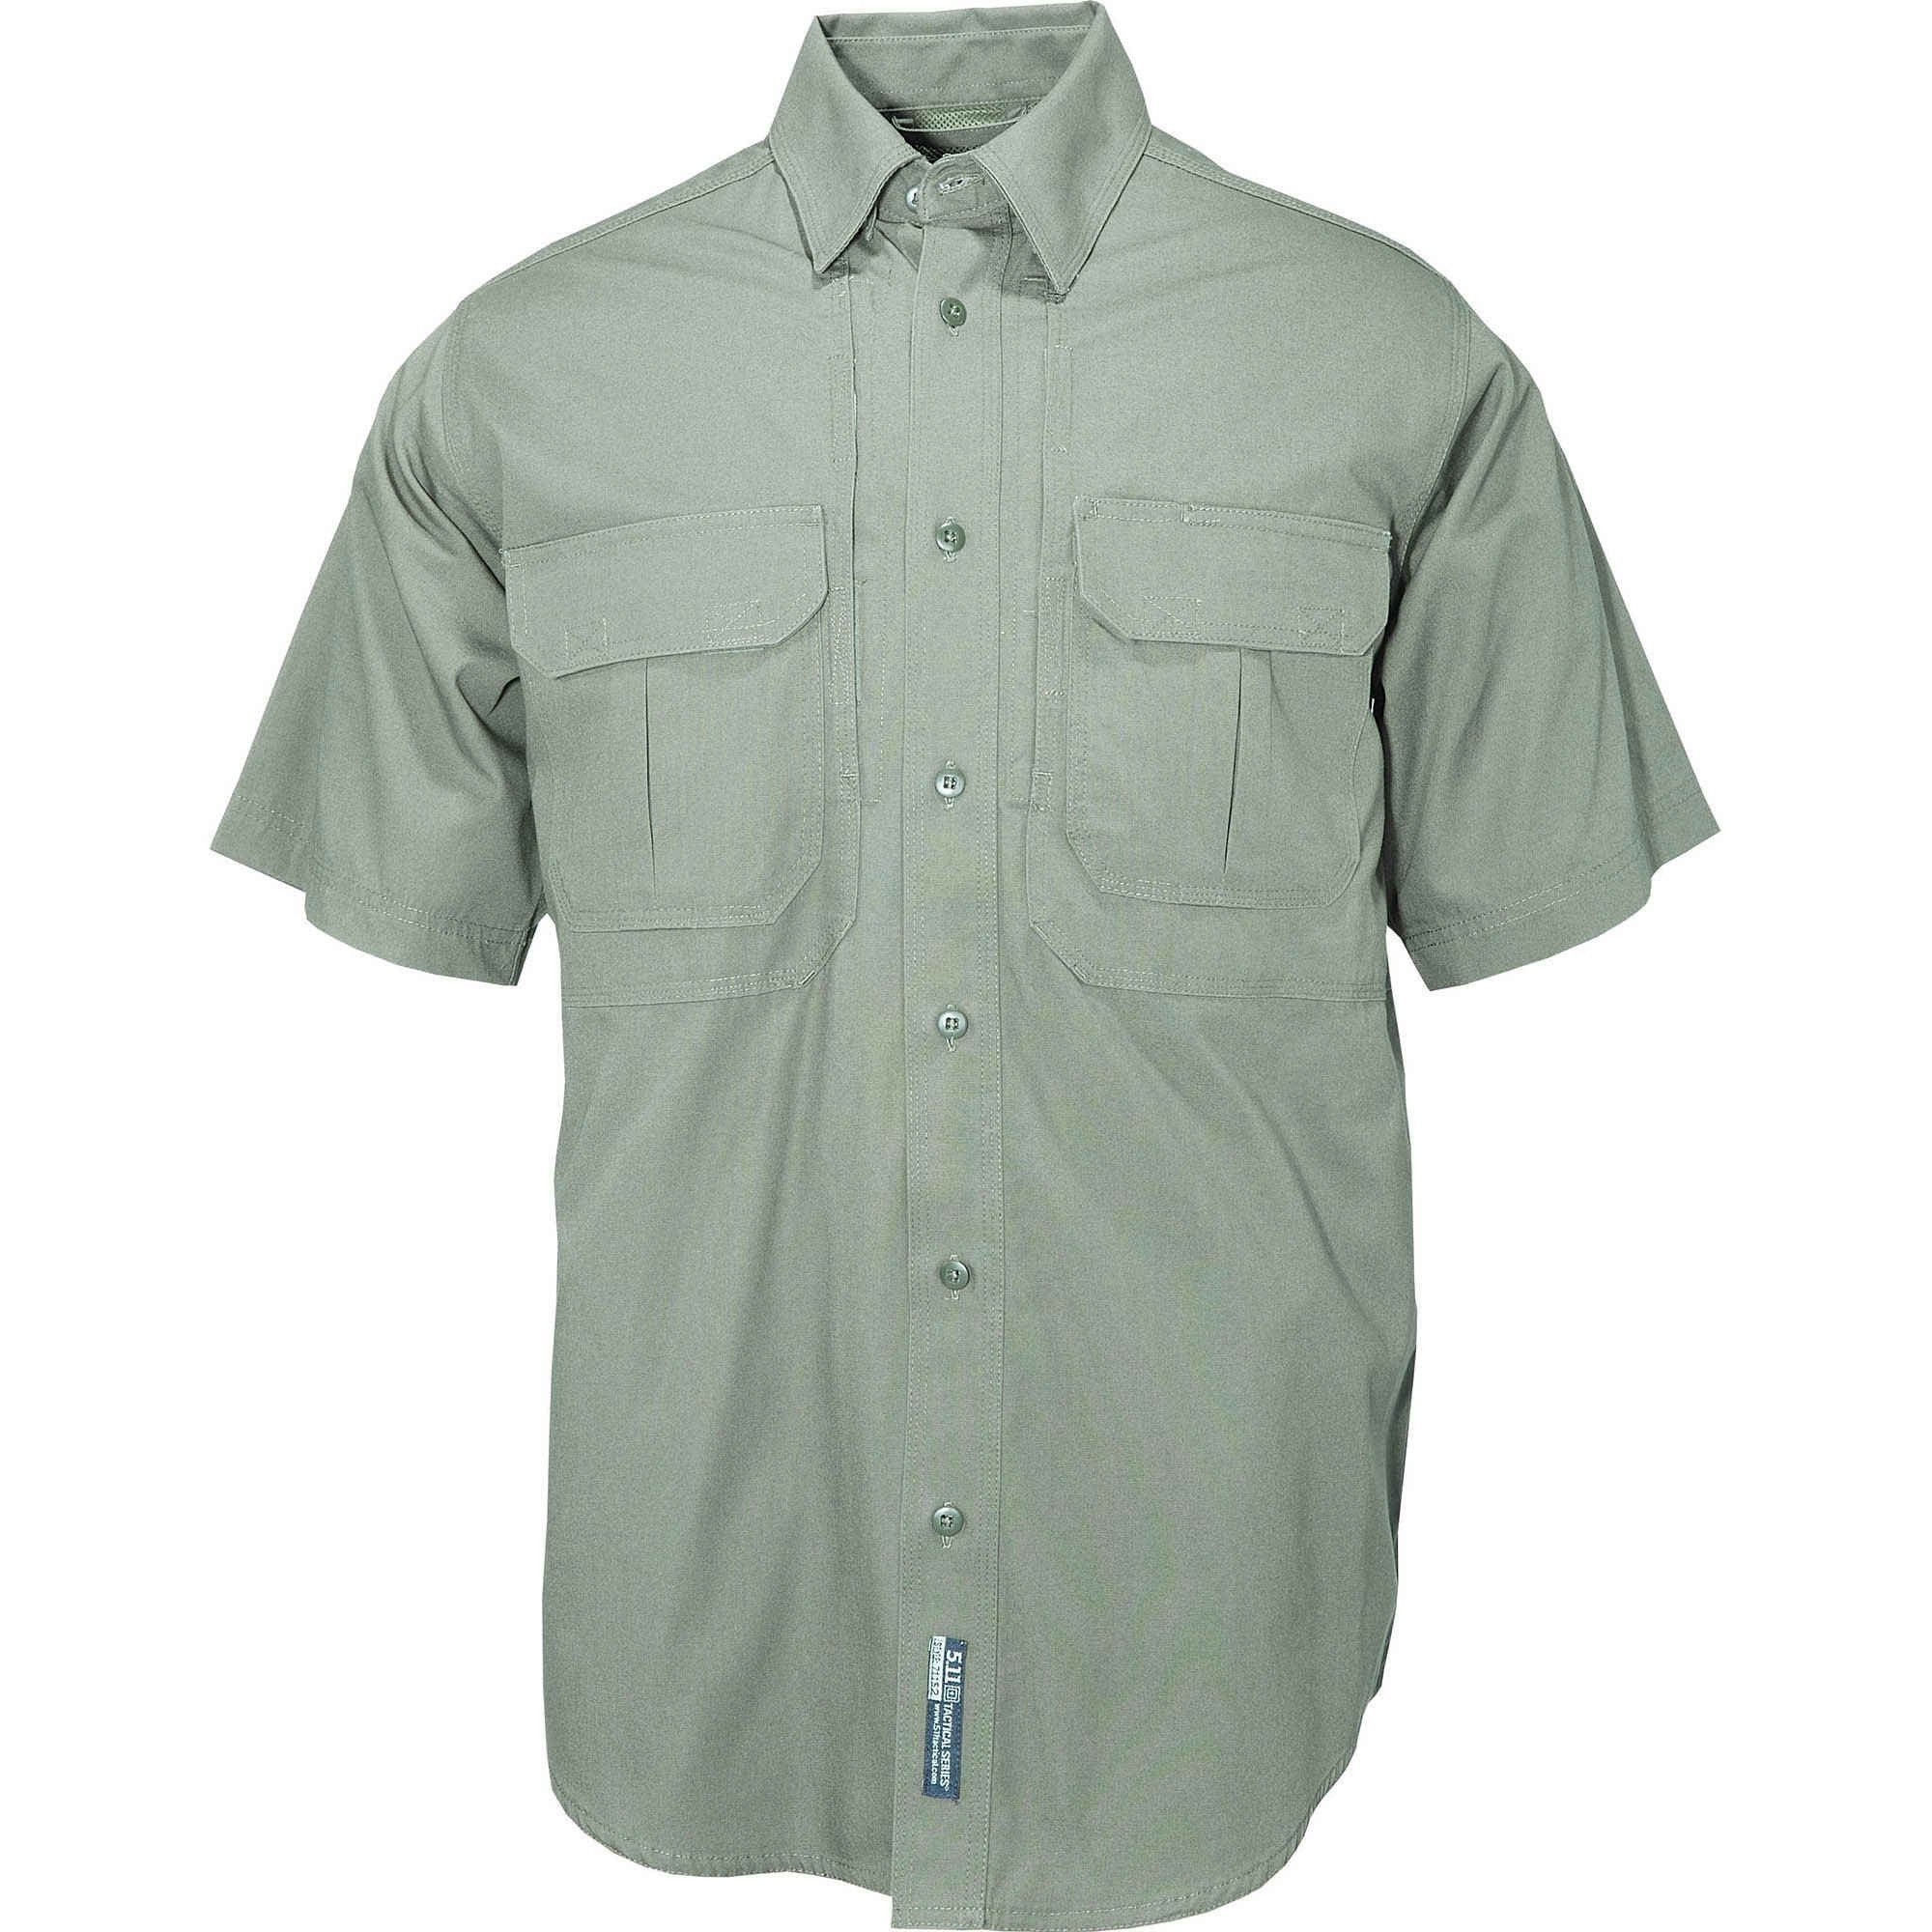 5.11 Tactical Men's Short Sleeve Tactical Shirt Shirts 5.11 Tactical OD Green Extra Small Tactical Gear Supplier Tactical Distributors Australia